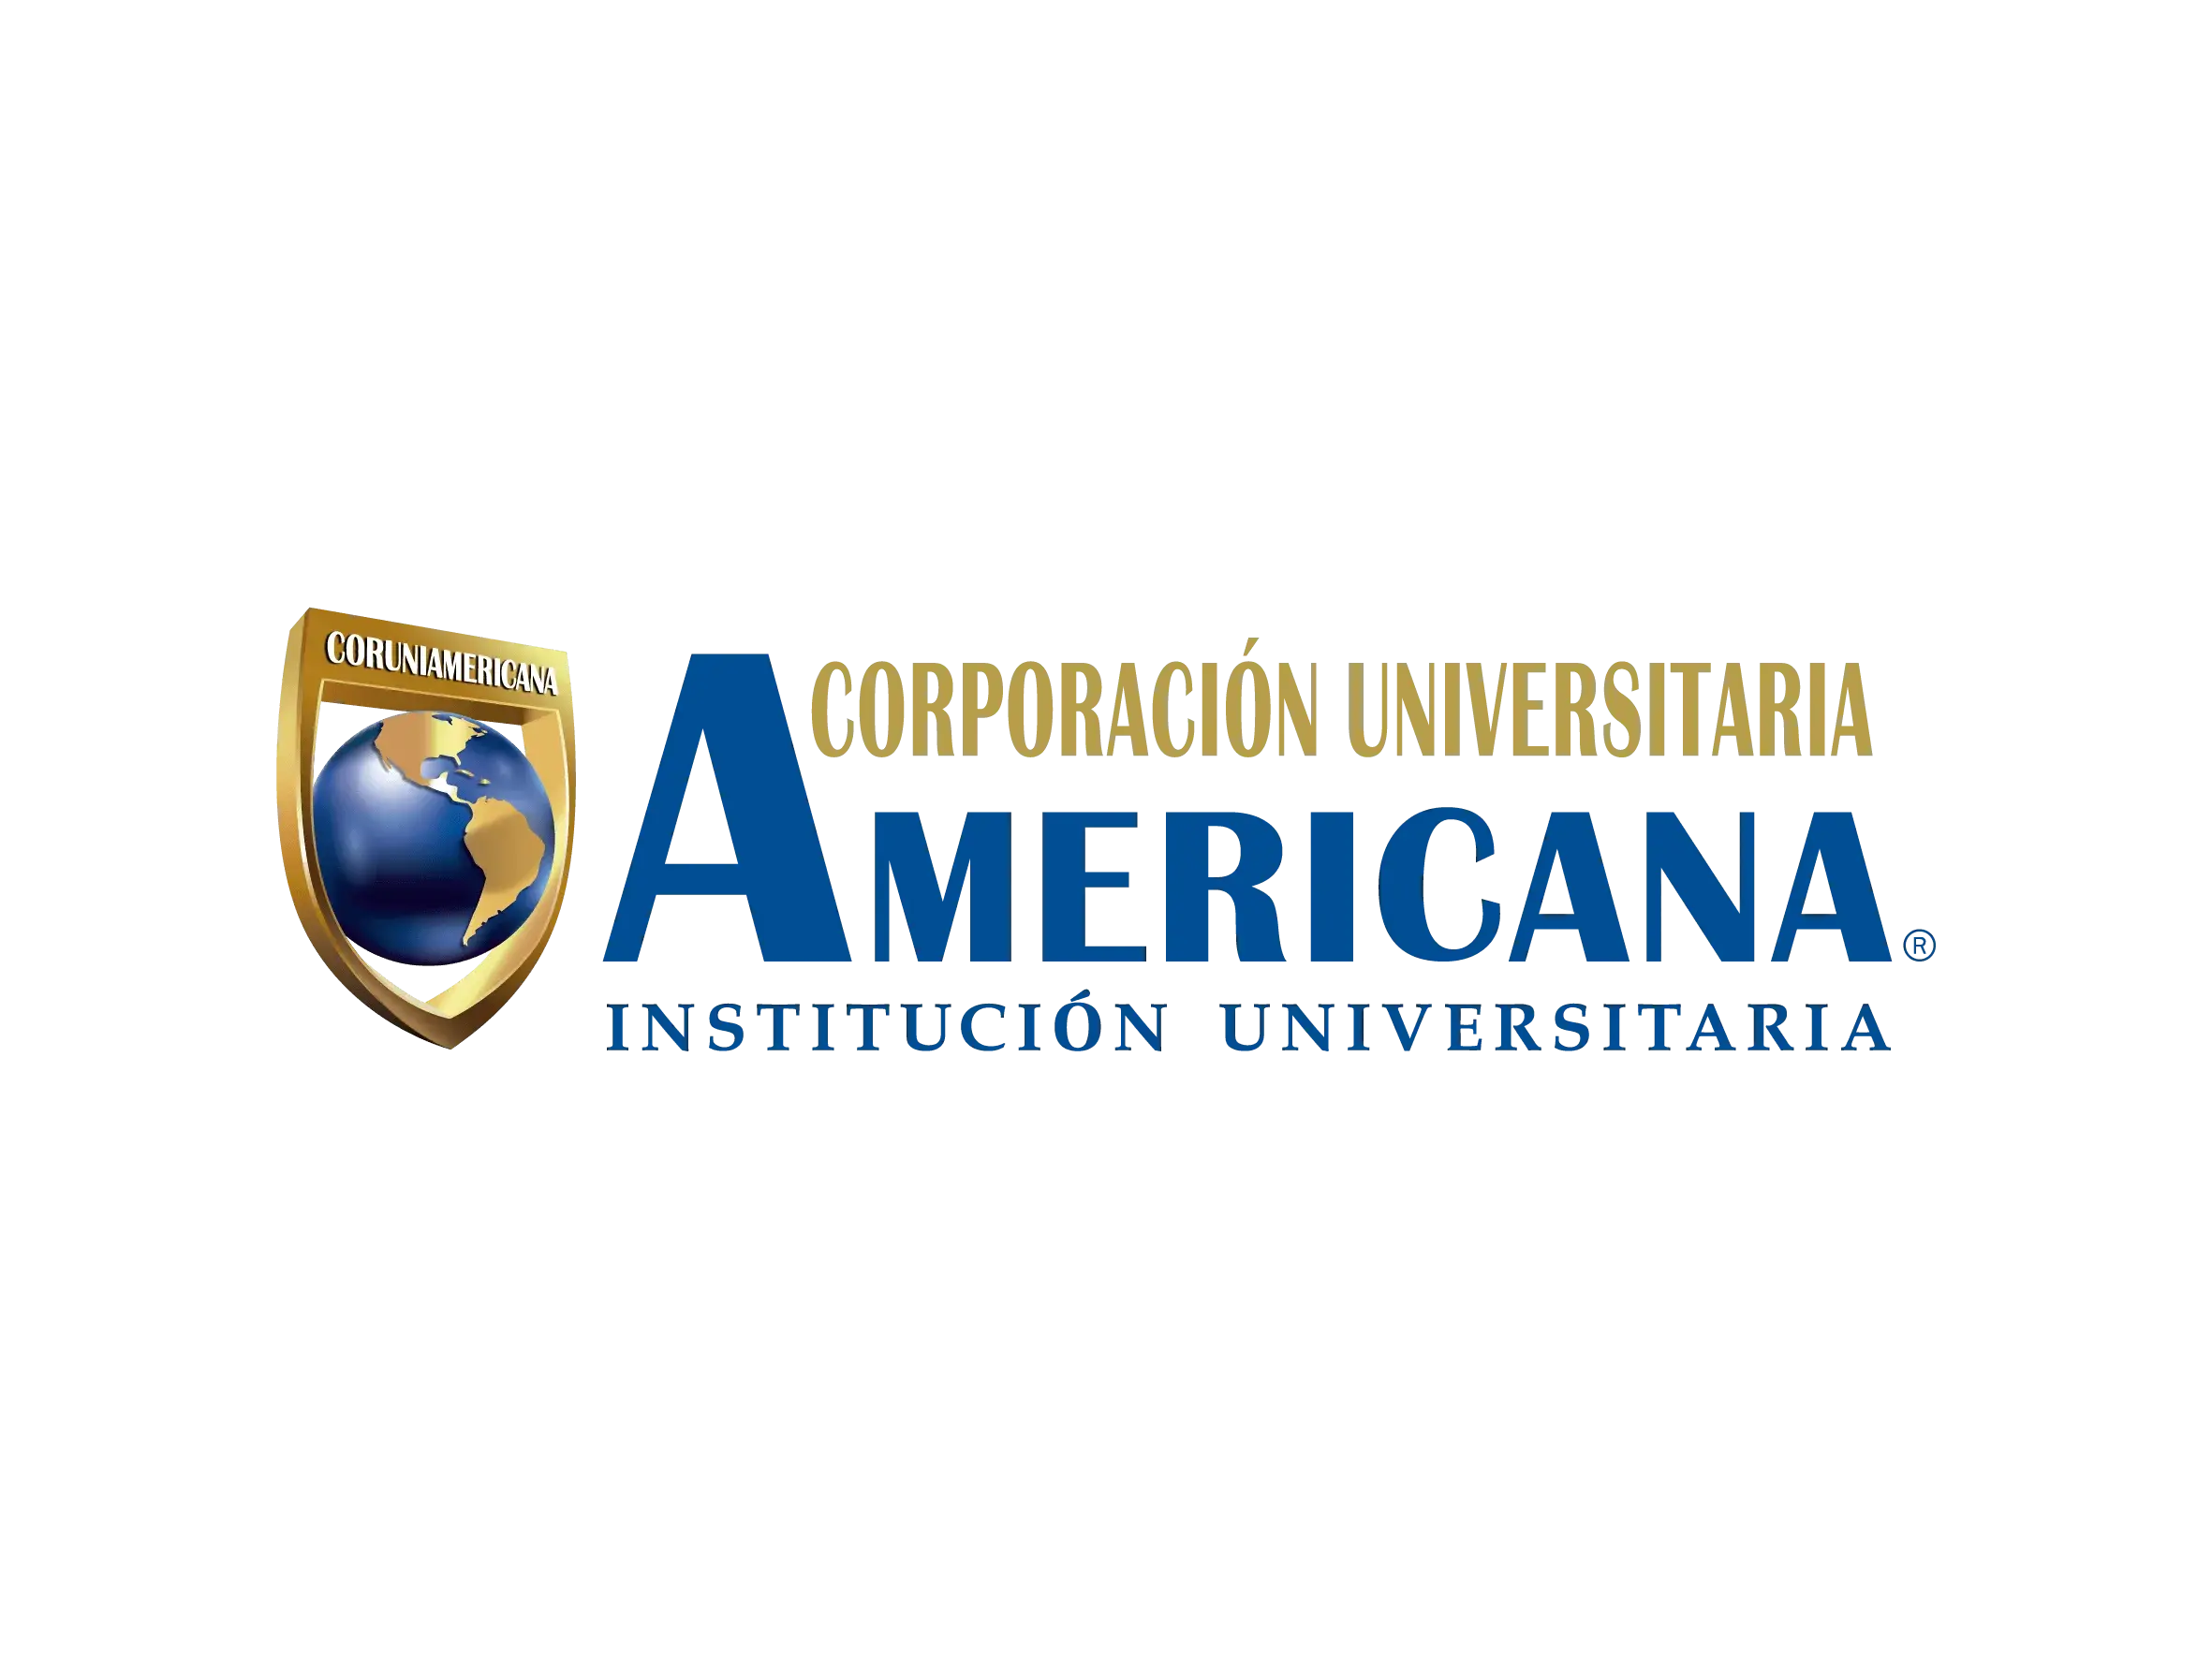 Con Brilla Colombia, solicita tu crédito y financia tu crédito estudiantil en Valledupar, Santa Marta y Barranquilla, consulta con un asesor de confianza y no dejes pasar esta oportunidad.